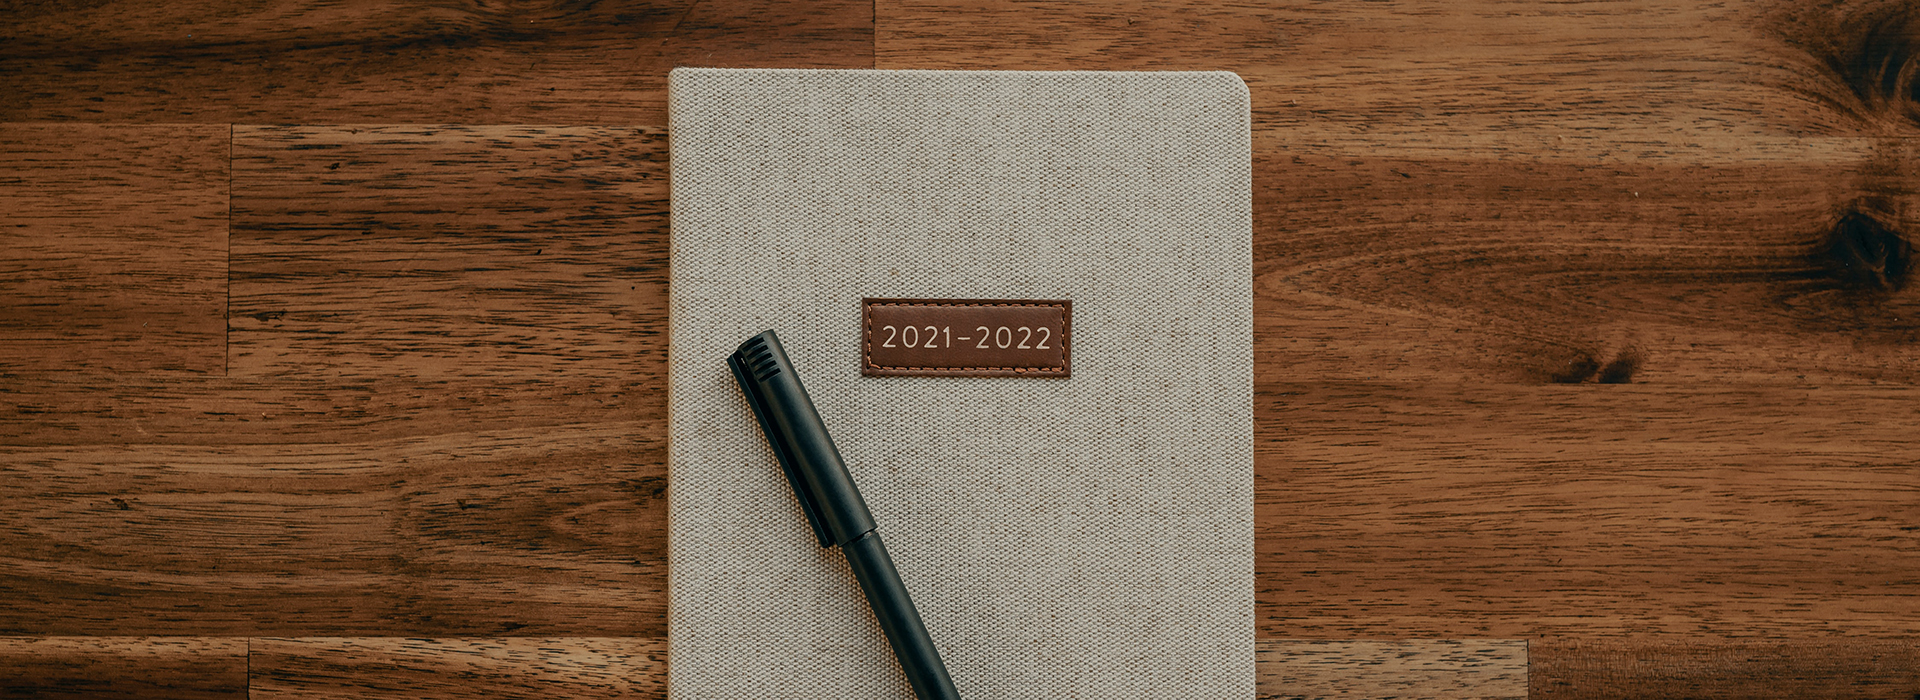 2021 x 2022: O que muda no mercado imobiliário?